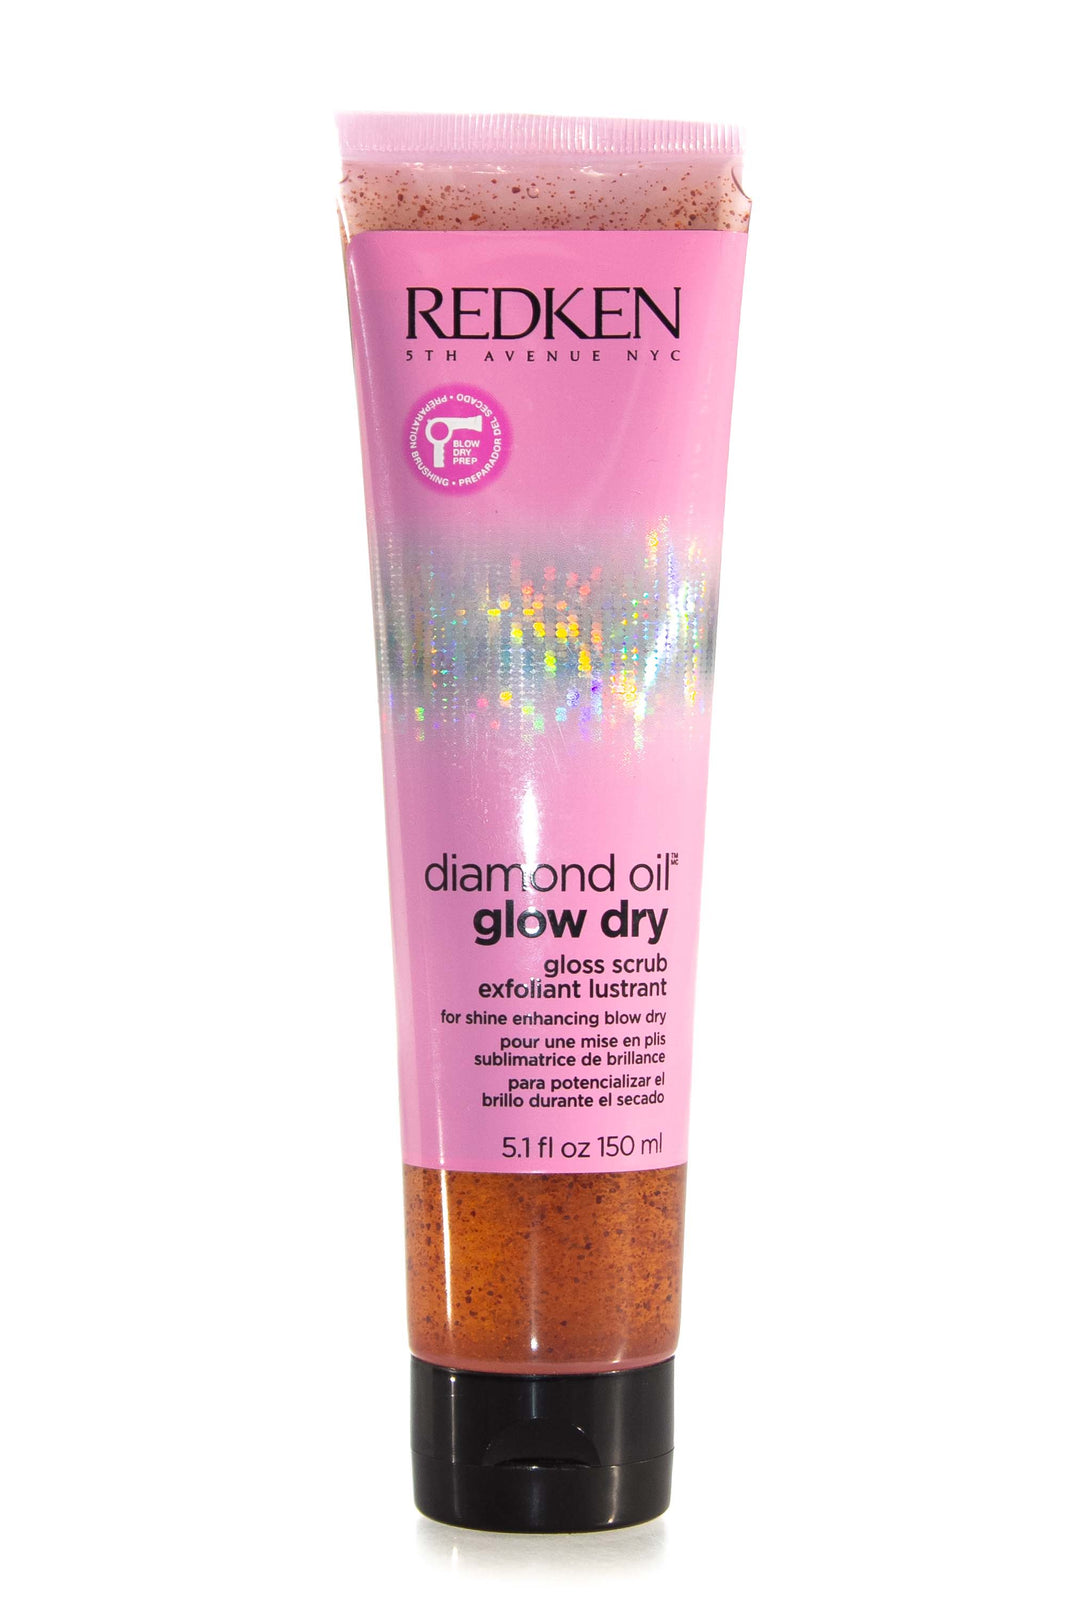 redken-diamon-oil-glow-dry-scrub-150ml